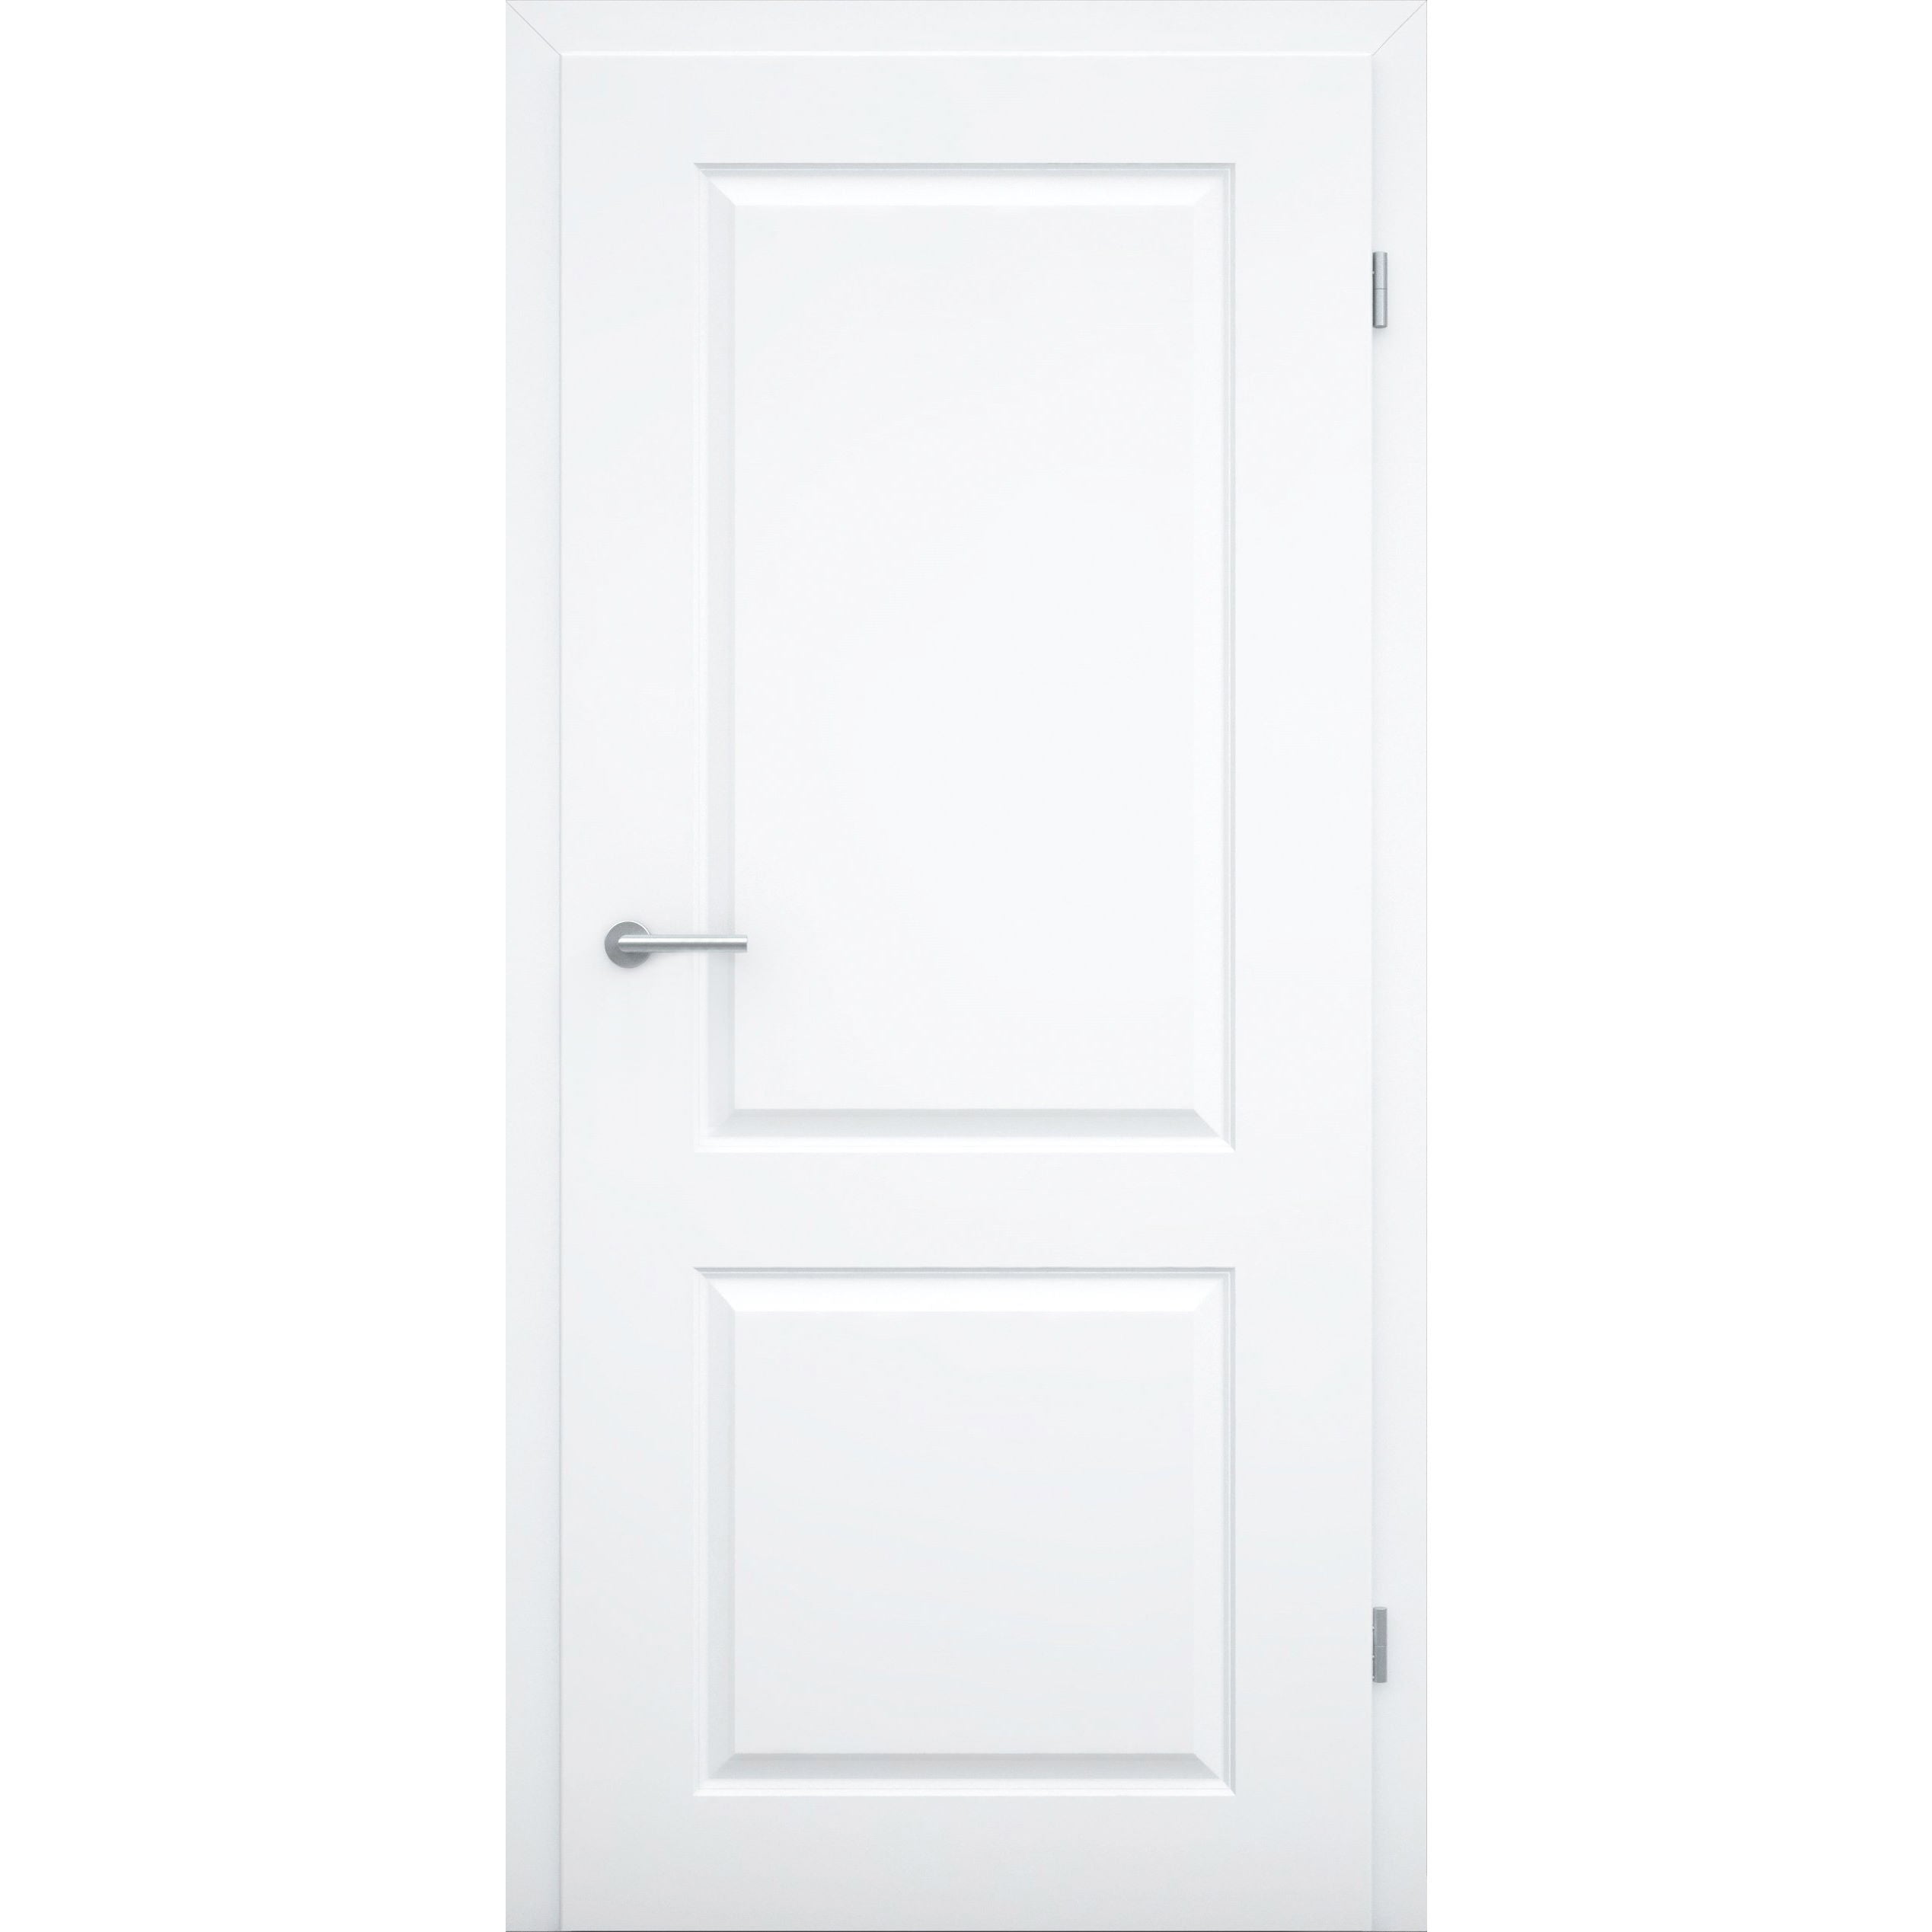 Zimmertür mit Zarge ohne Schlüssellochbohrung brillant-weiß 2 Kassetten Designkante RSP - Modell Stiltür K23